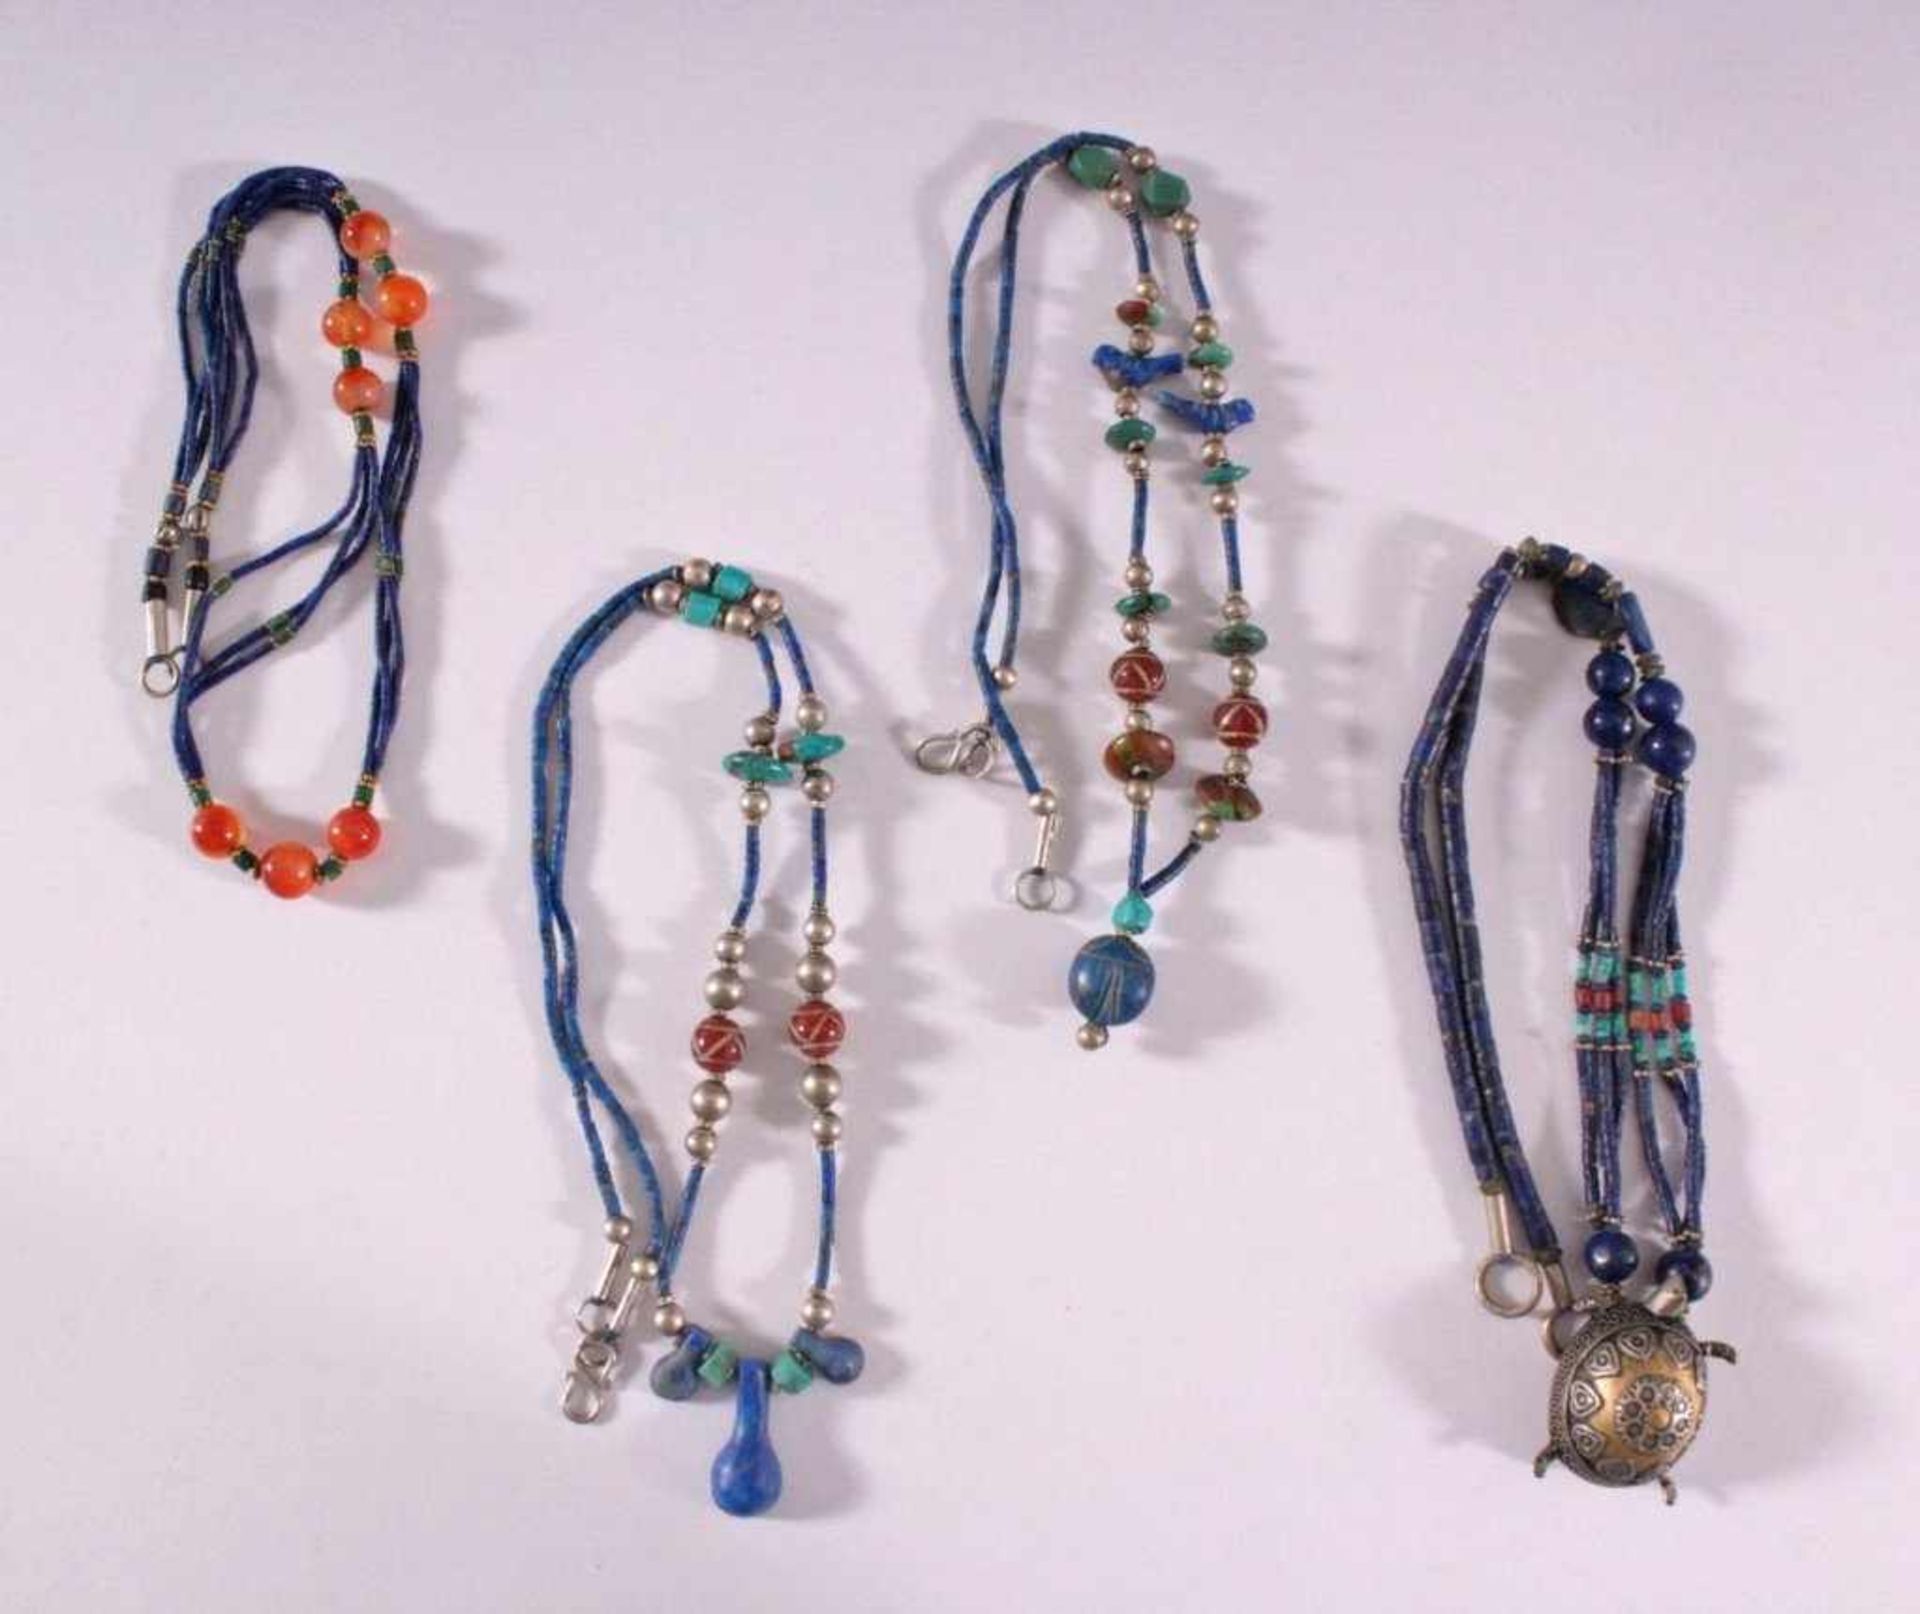 Vier HalskettenKetten aus Lapislazuli, Türkis, Carneol, Silber..aufgefädelt, Anhänger aus Tombak,